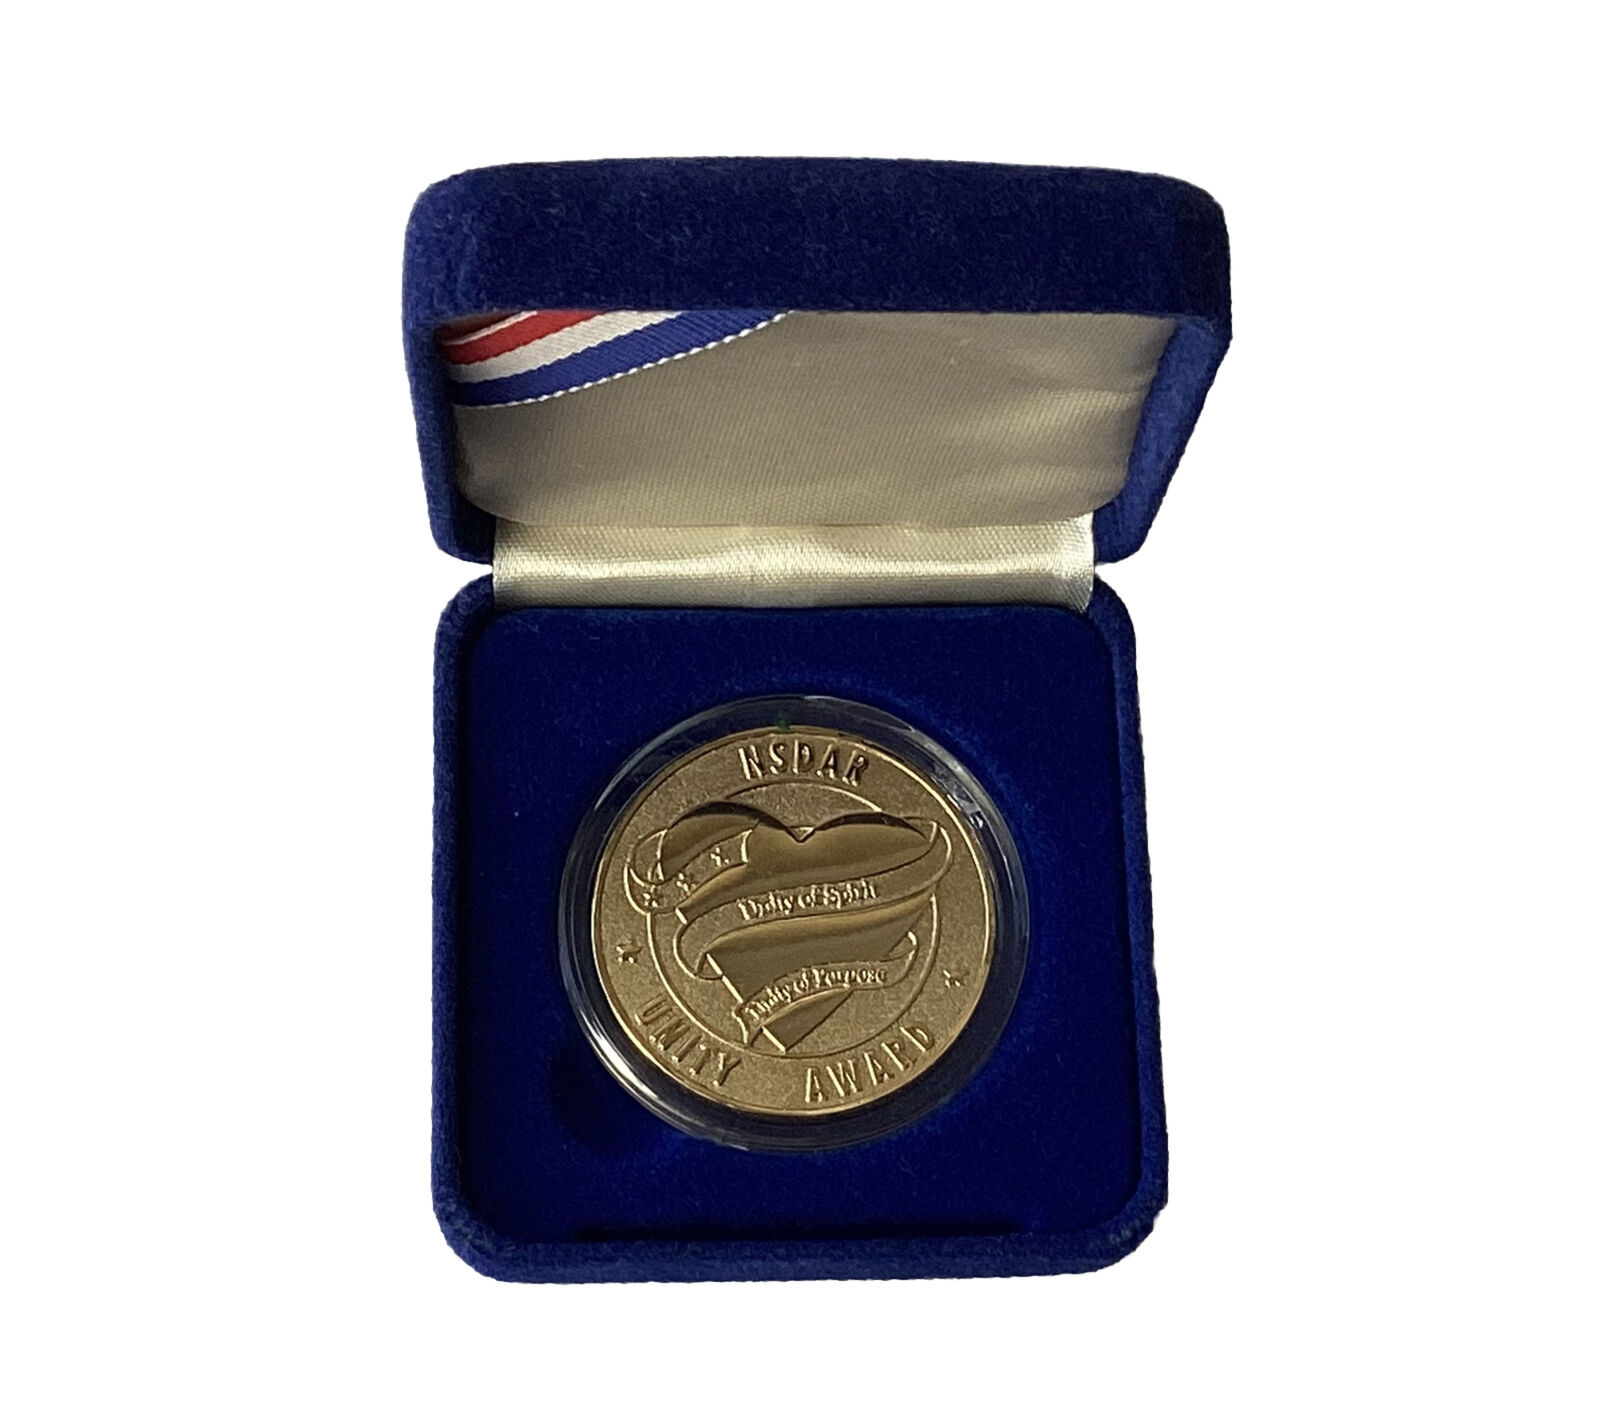 VTG NSDAR Daughters of The American Revolution War Award Medallion, 1998-2001